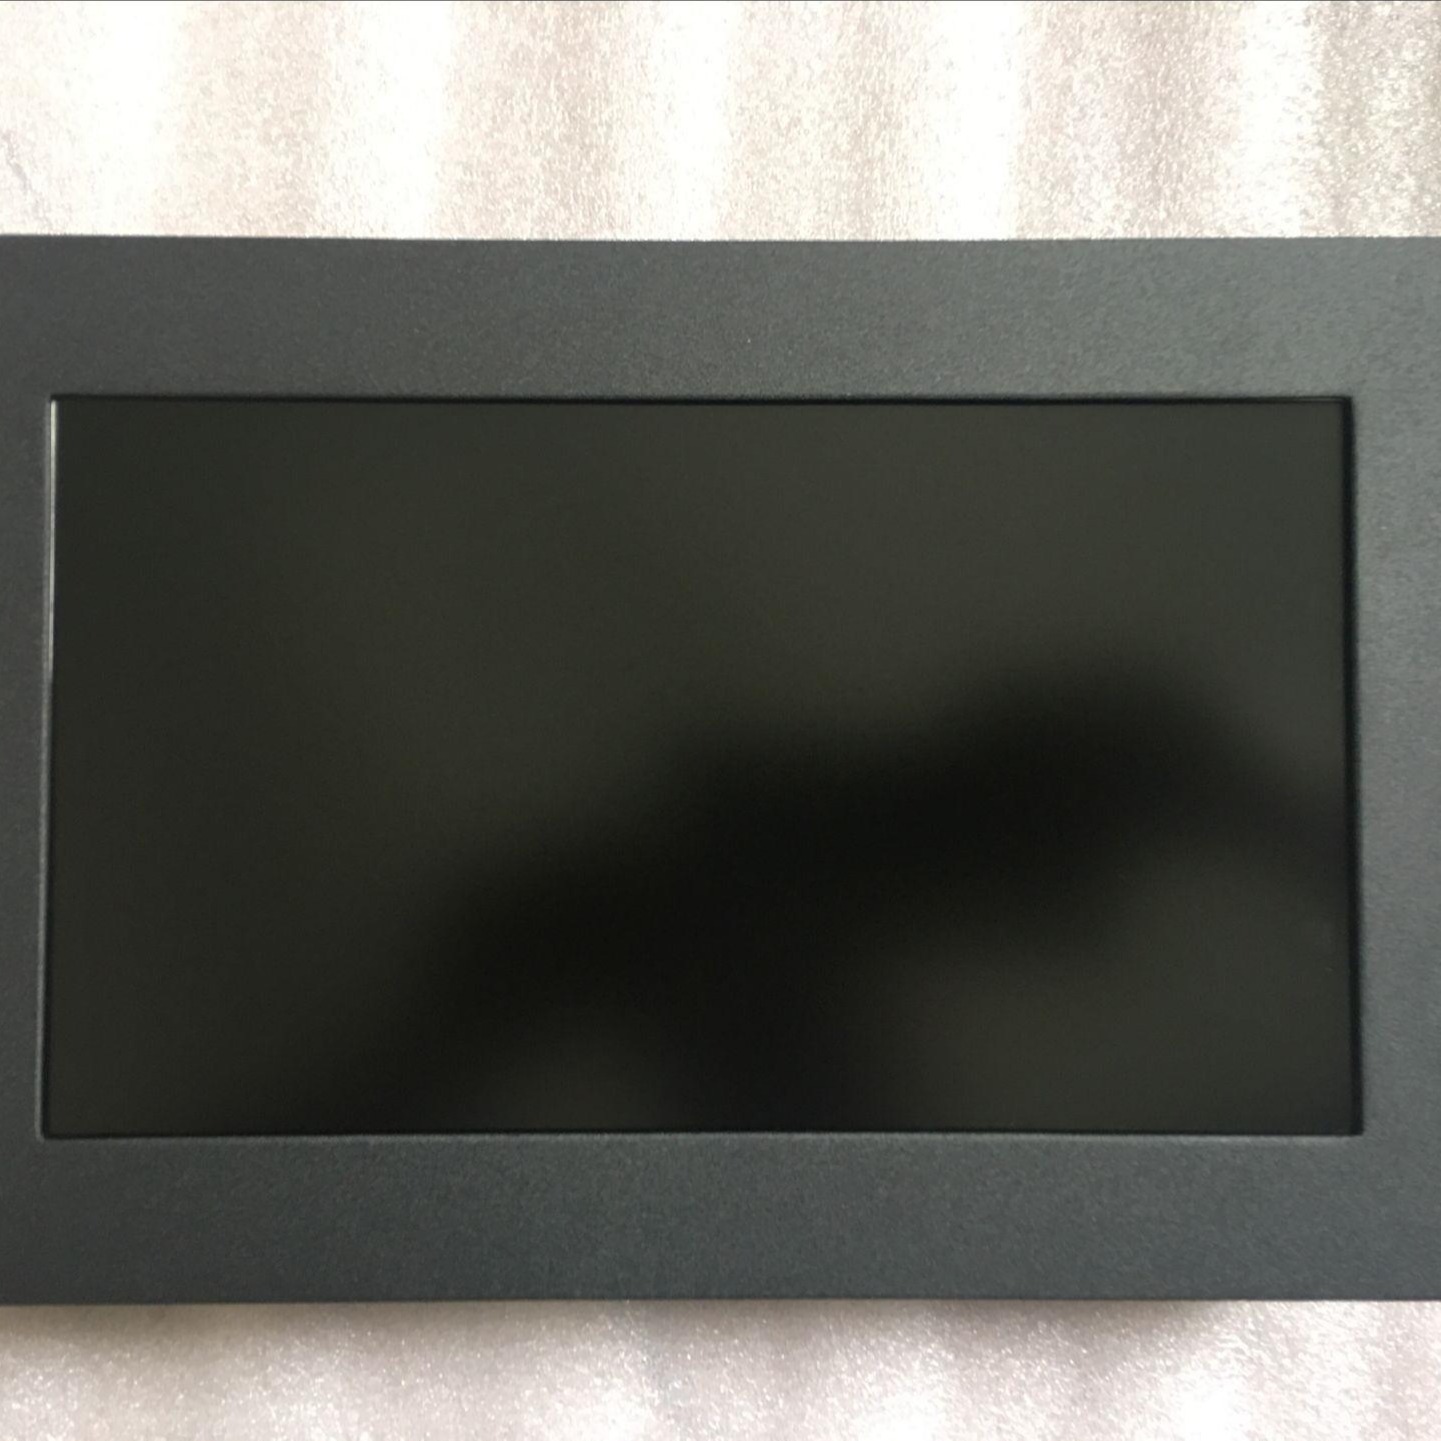 LJ640U327 15寸机箱显示器 金属纯平显示器 工业平板显示器